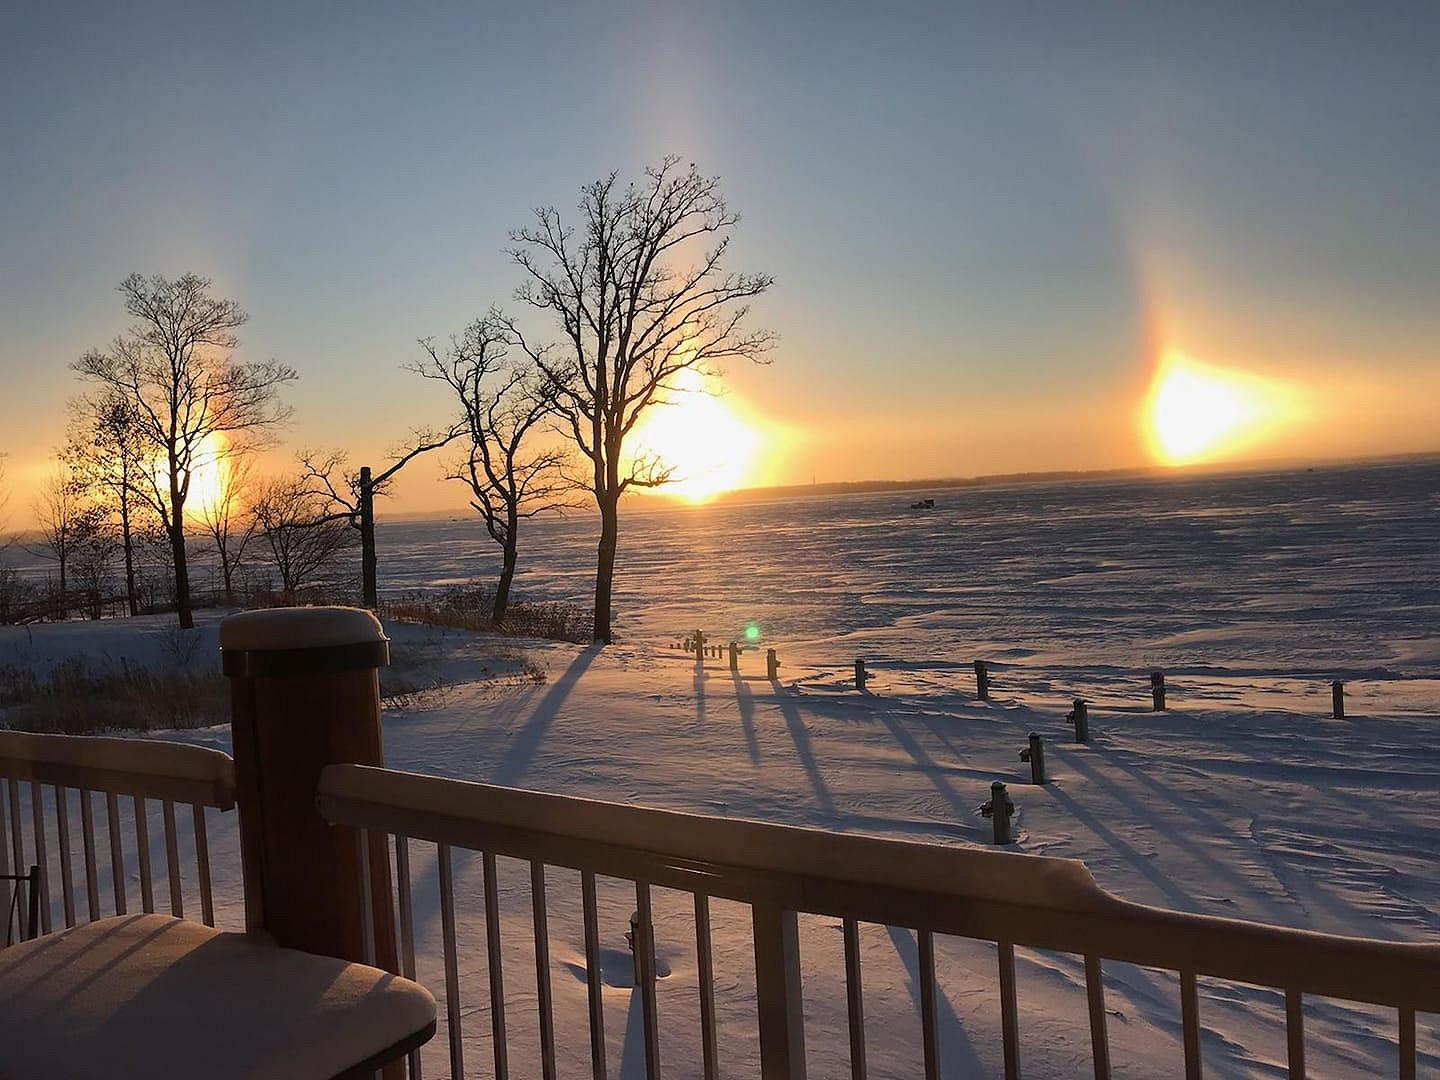 December 28, 2018 Big Detroit Lake Sunset at The Lodge on Lake Detroit